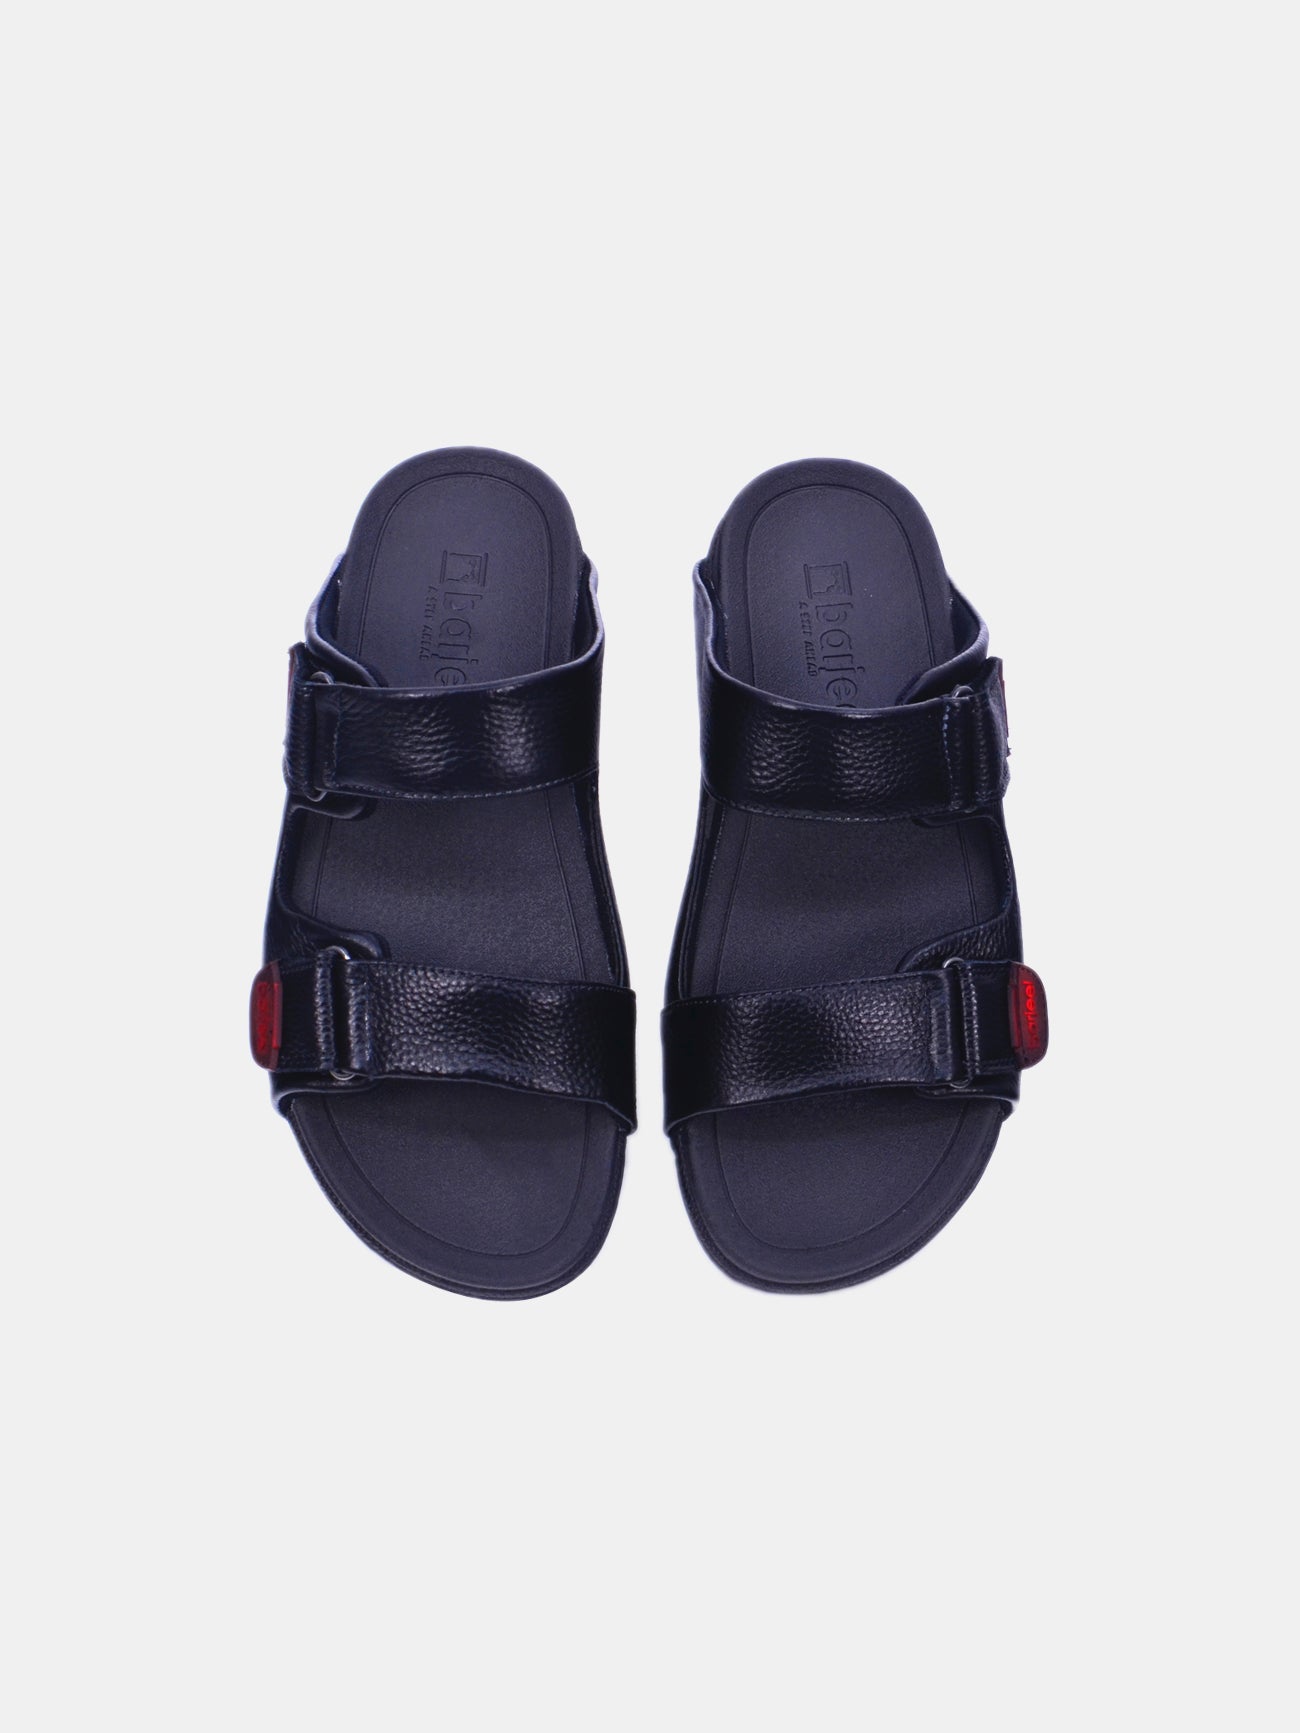 Barjeel Uno 20272 Men's Arabic Sandals #color_Black